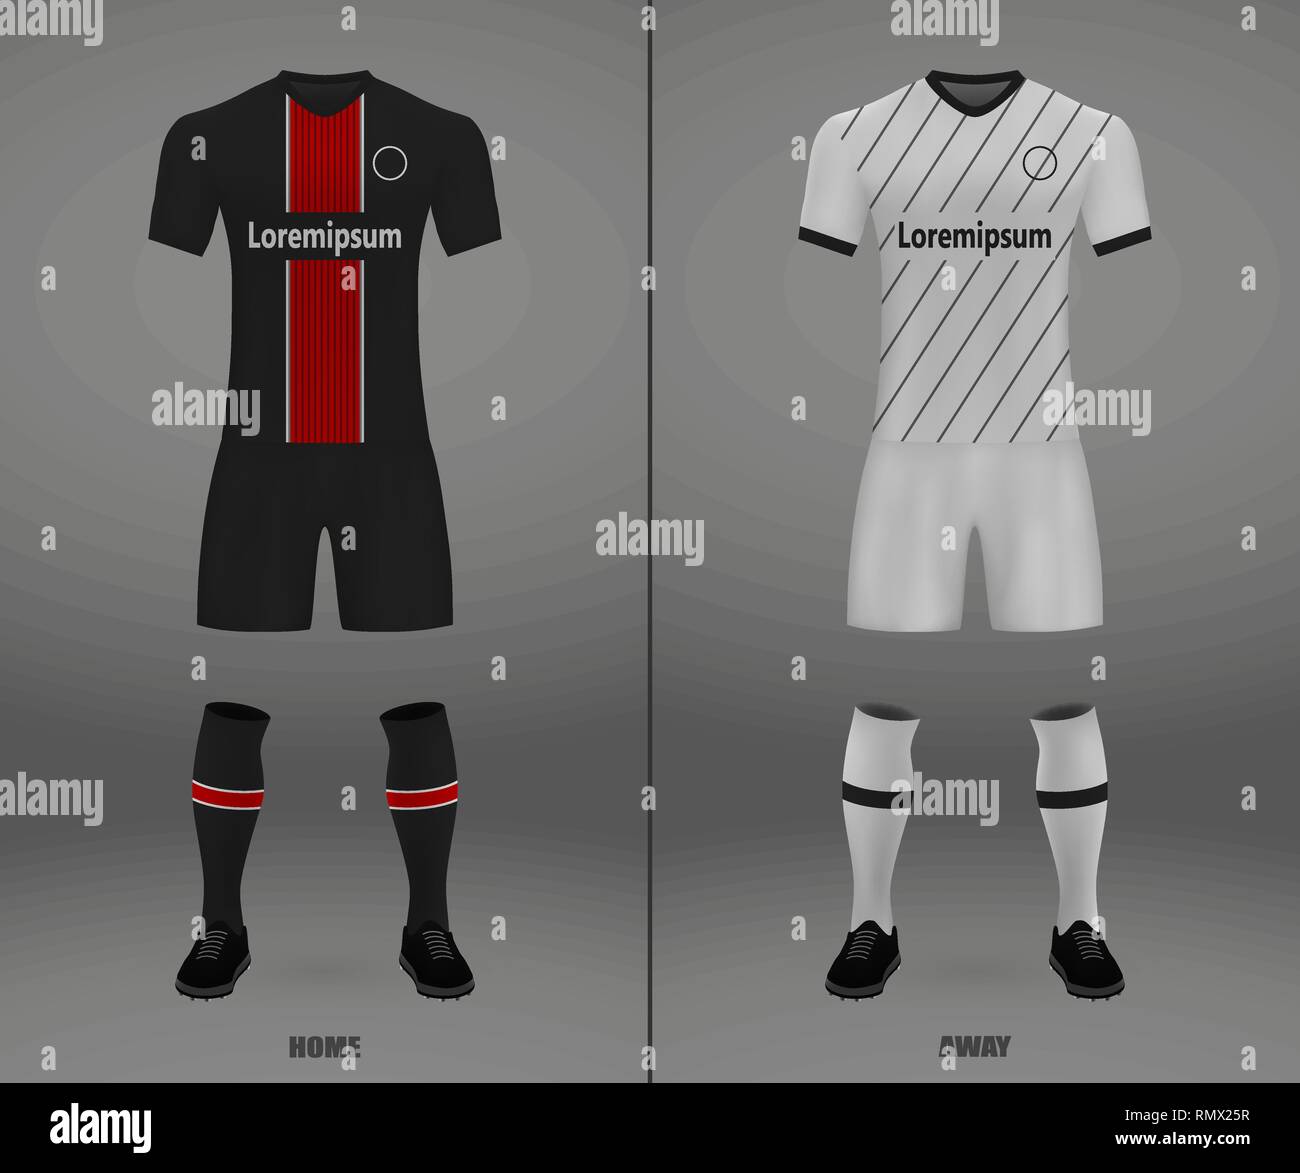 Football Kit Bayer Leverkusen 2018 19 Shirt Template For Soccer Jersey Vector Illustration Stock Vector Image Art Alamy